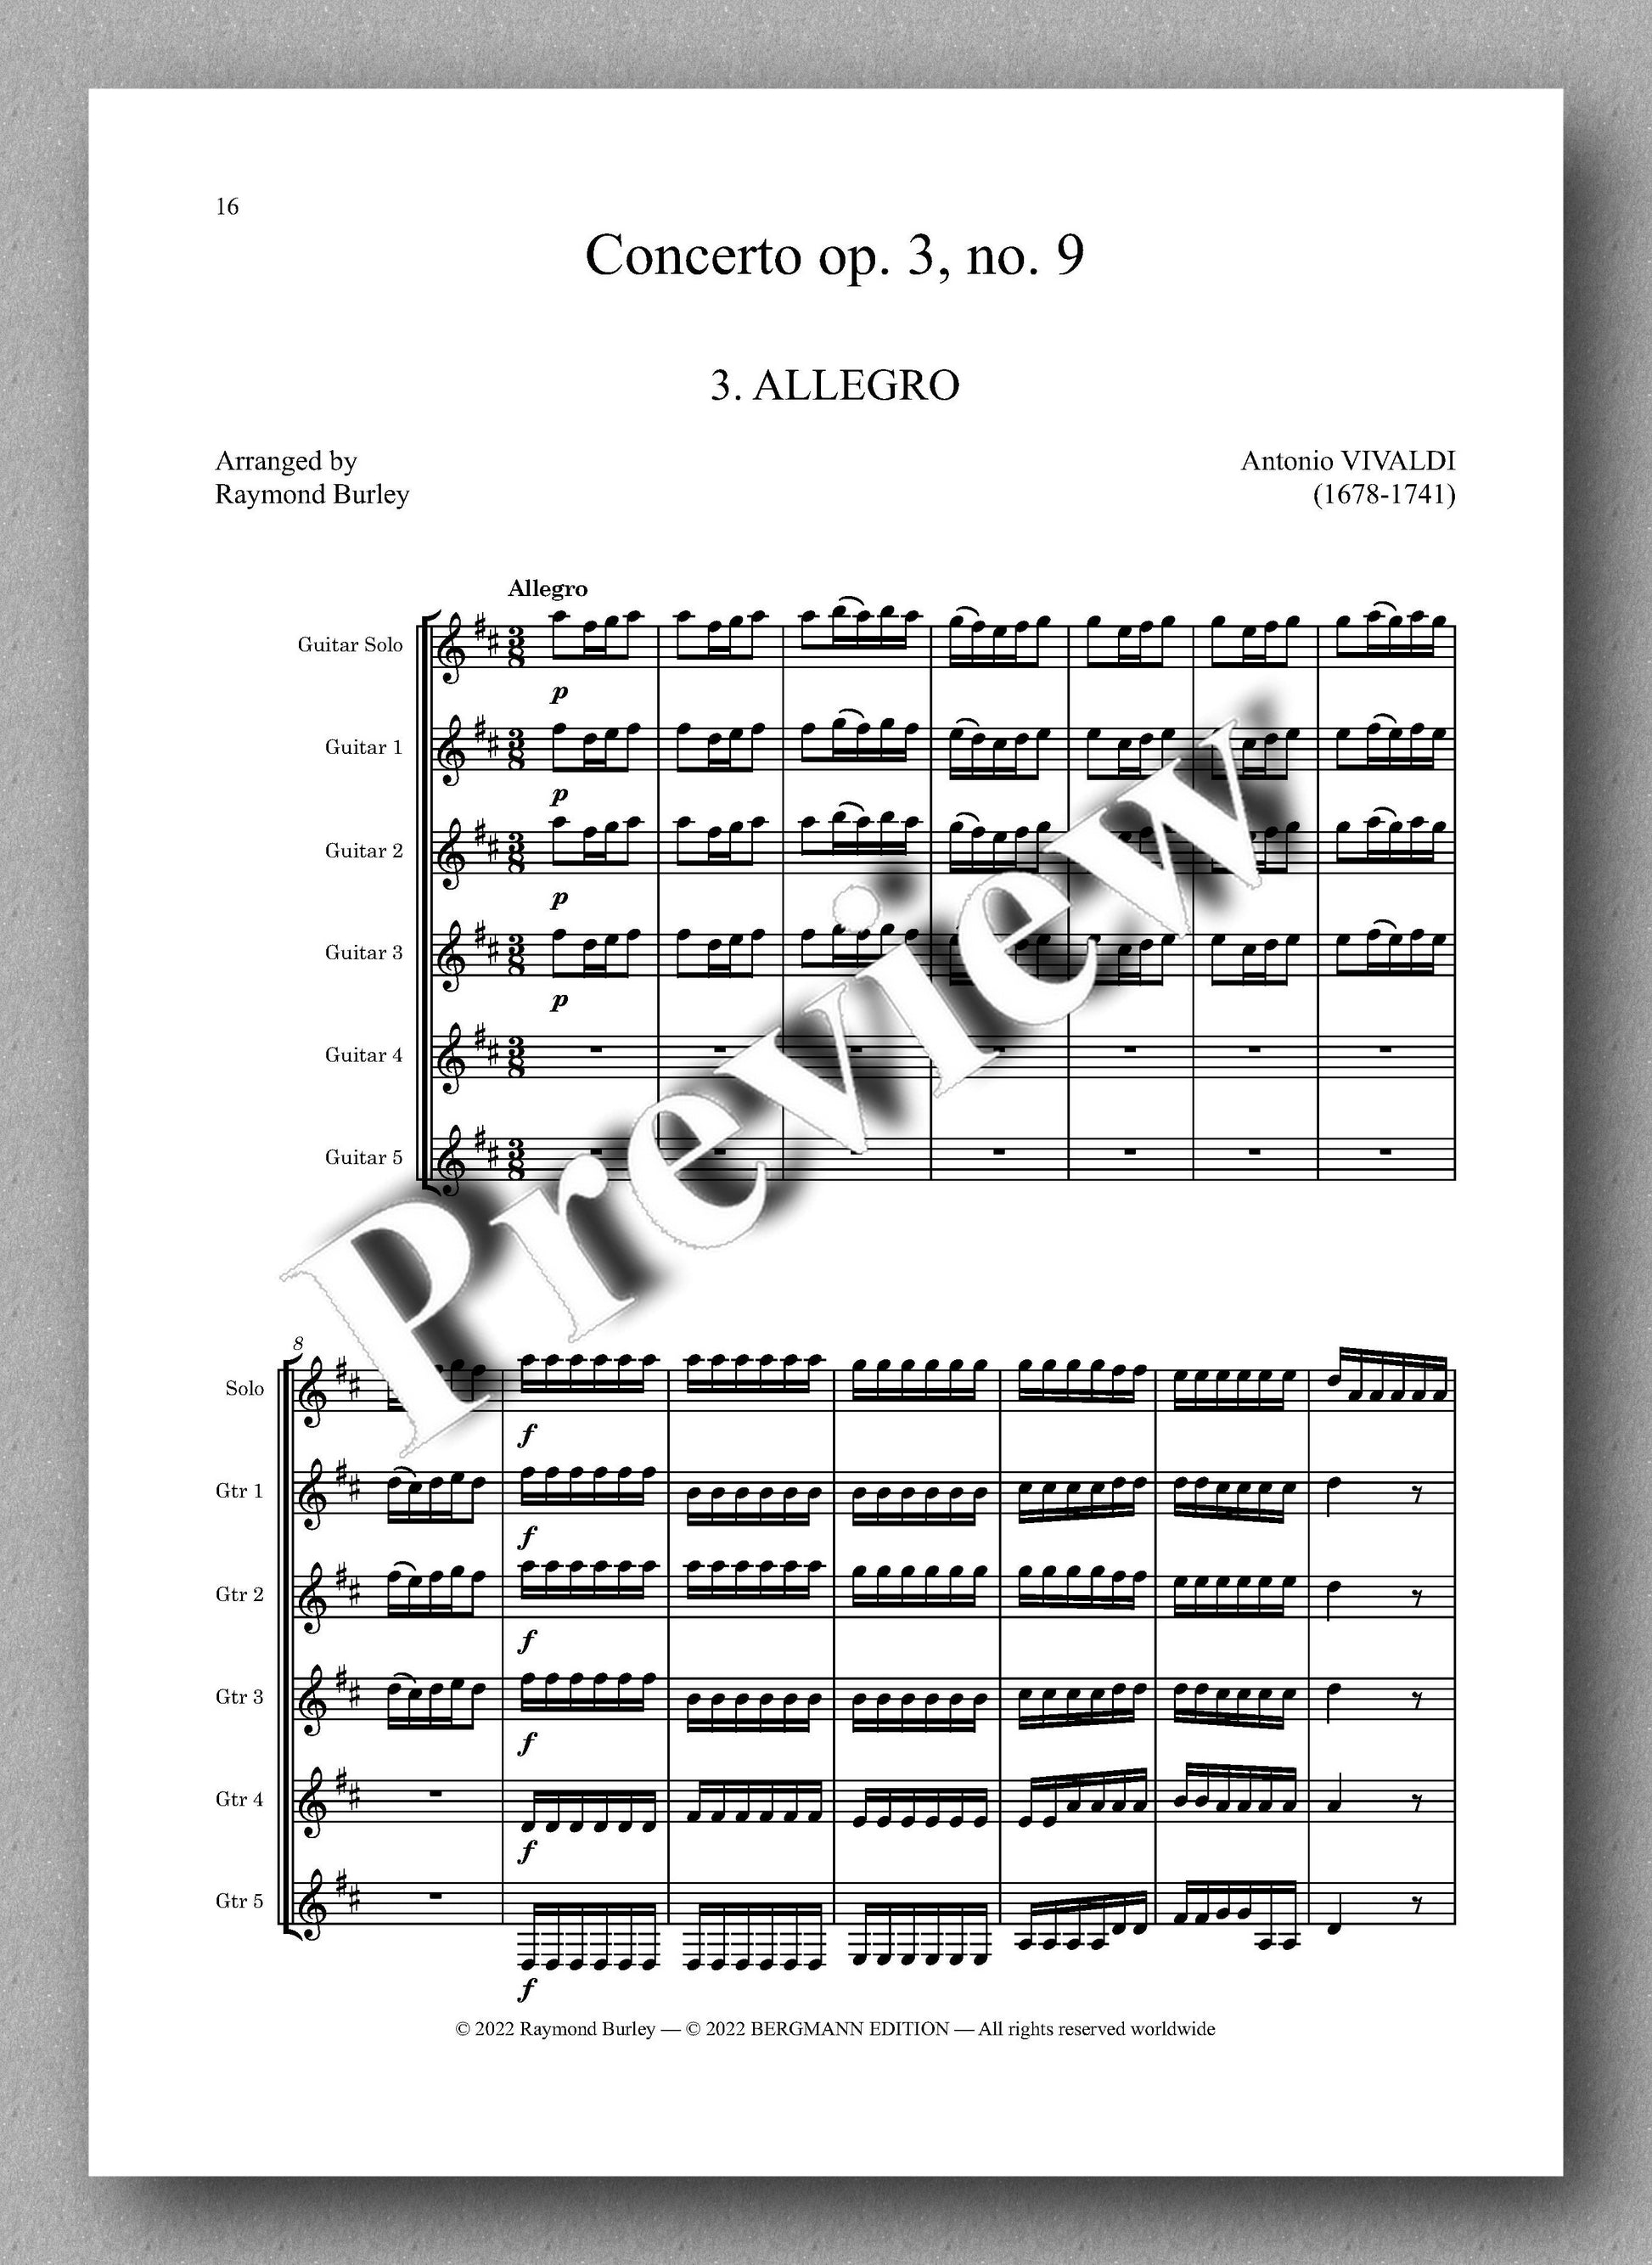 Vivaldi-Burley, Concerto op. 3, no. 9 - music score 3